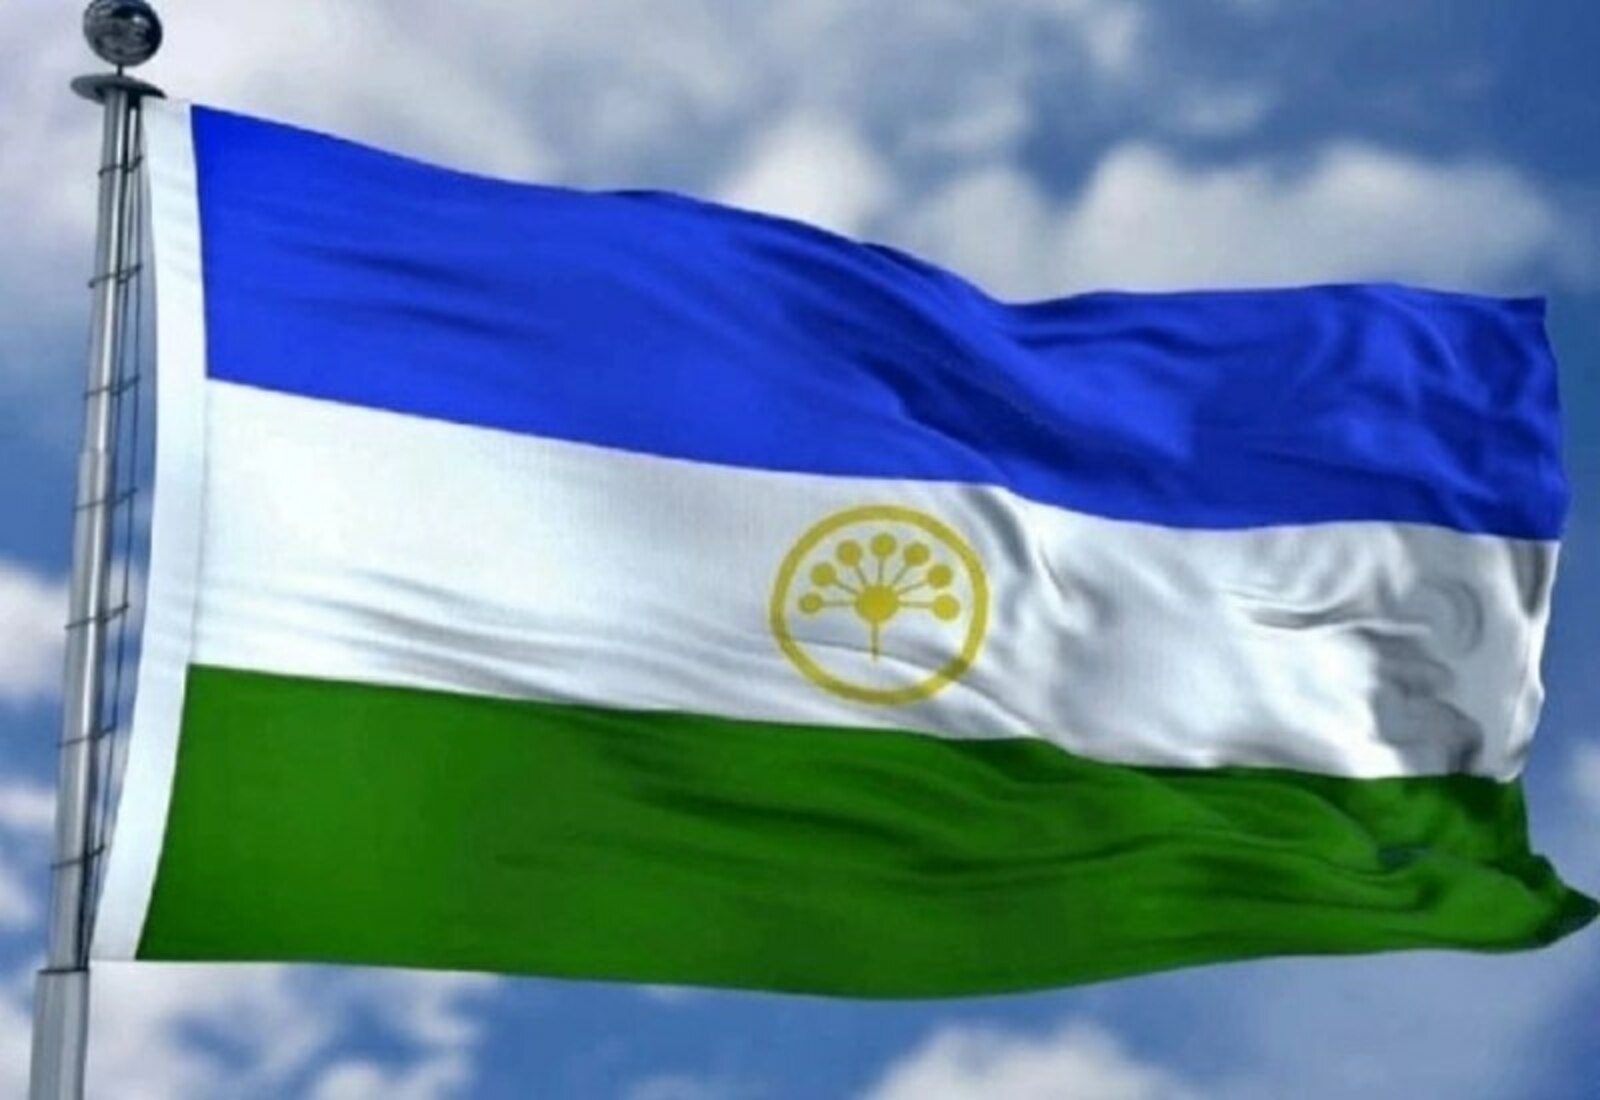 Сегодня отмечается День государственного флага Республики Башкортостан